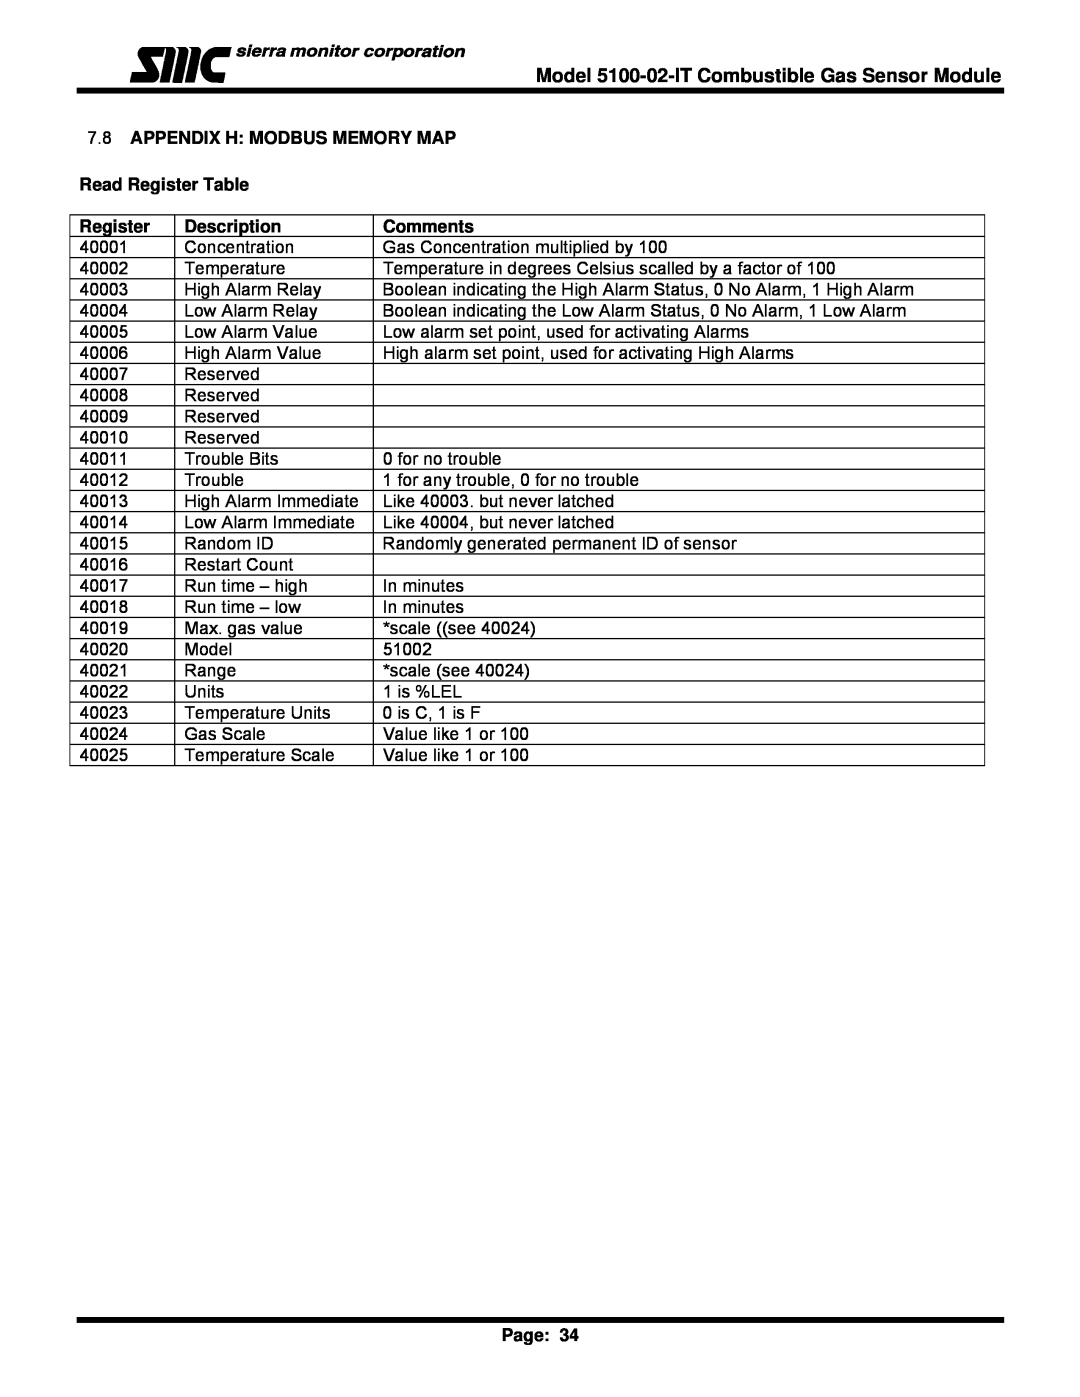 Univex IT Series, 5100-02-IT 7.8APPENDIX H MODBUS MEMORY MAP, Read Register Table, Description, Comments, Page 